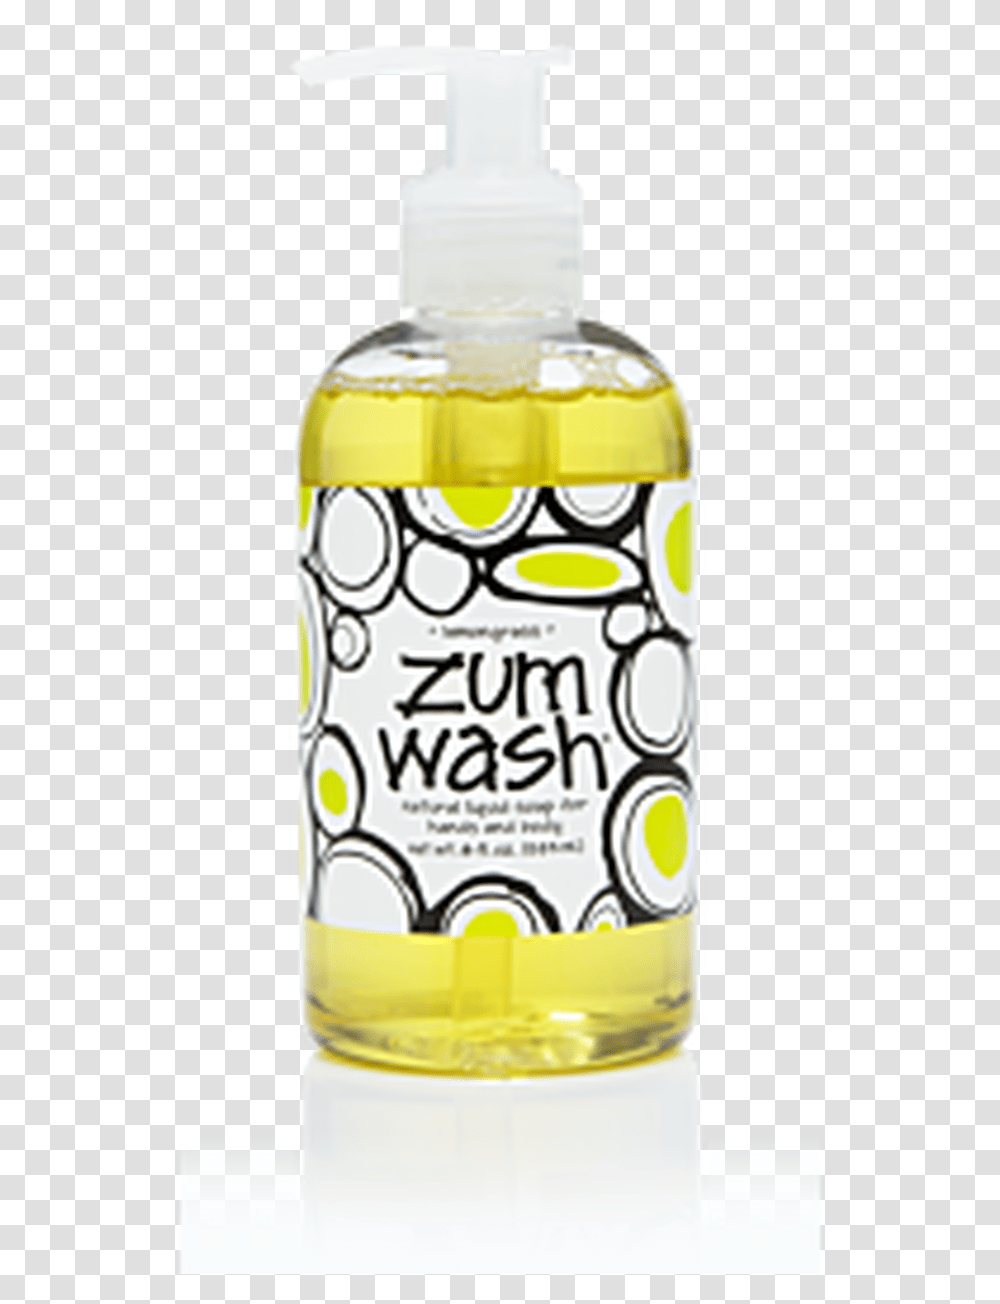 Zum Wash Natural Liquid Soap, Liquor, Alcohol, Beverage, Drink Transparent Png